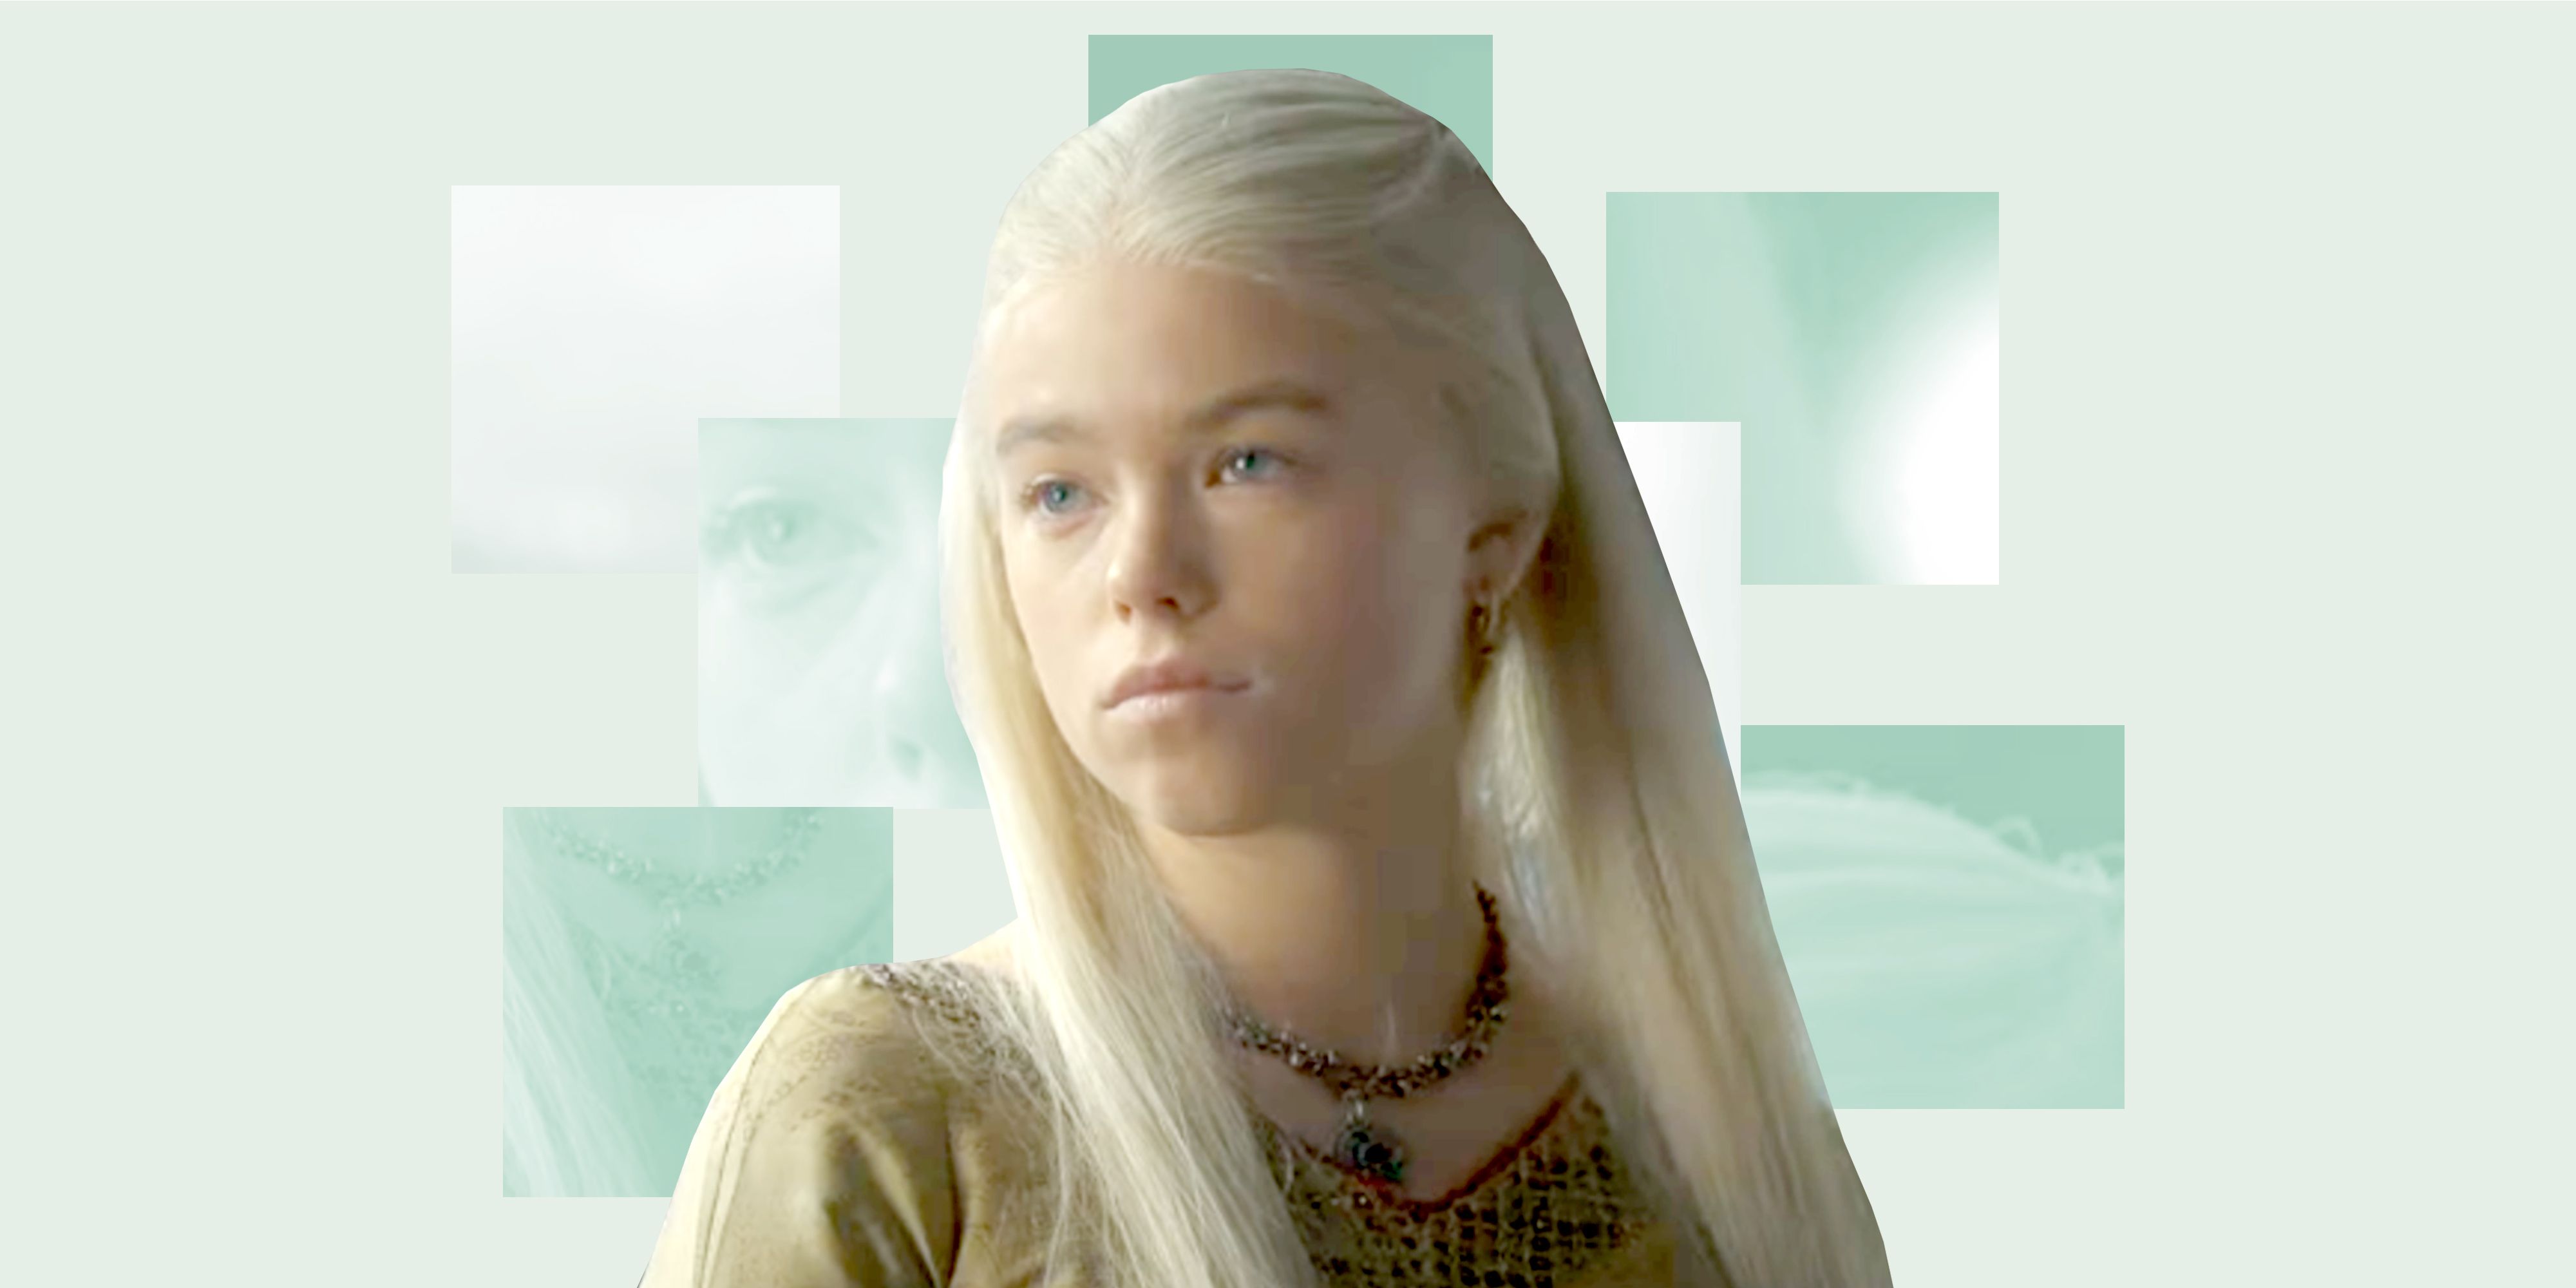 Emilia Clarke as Daenerys Targaryen in Game of Thrones | Daenerys targaryen  dress, Daenerys targaryen hair, Mother of dragons